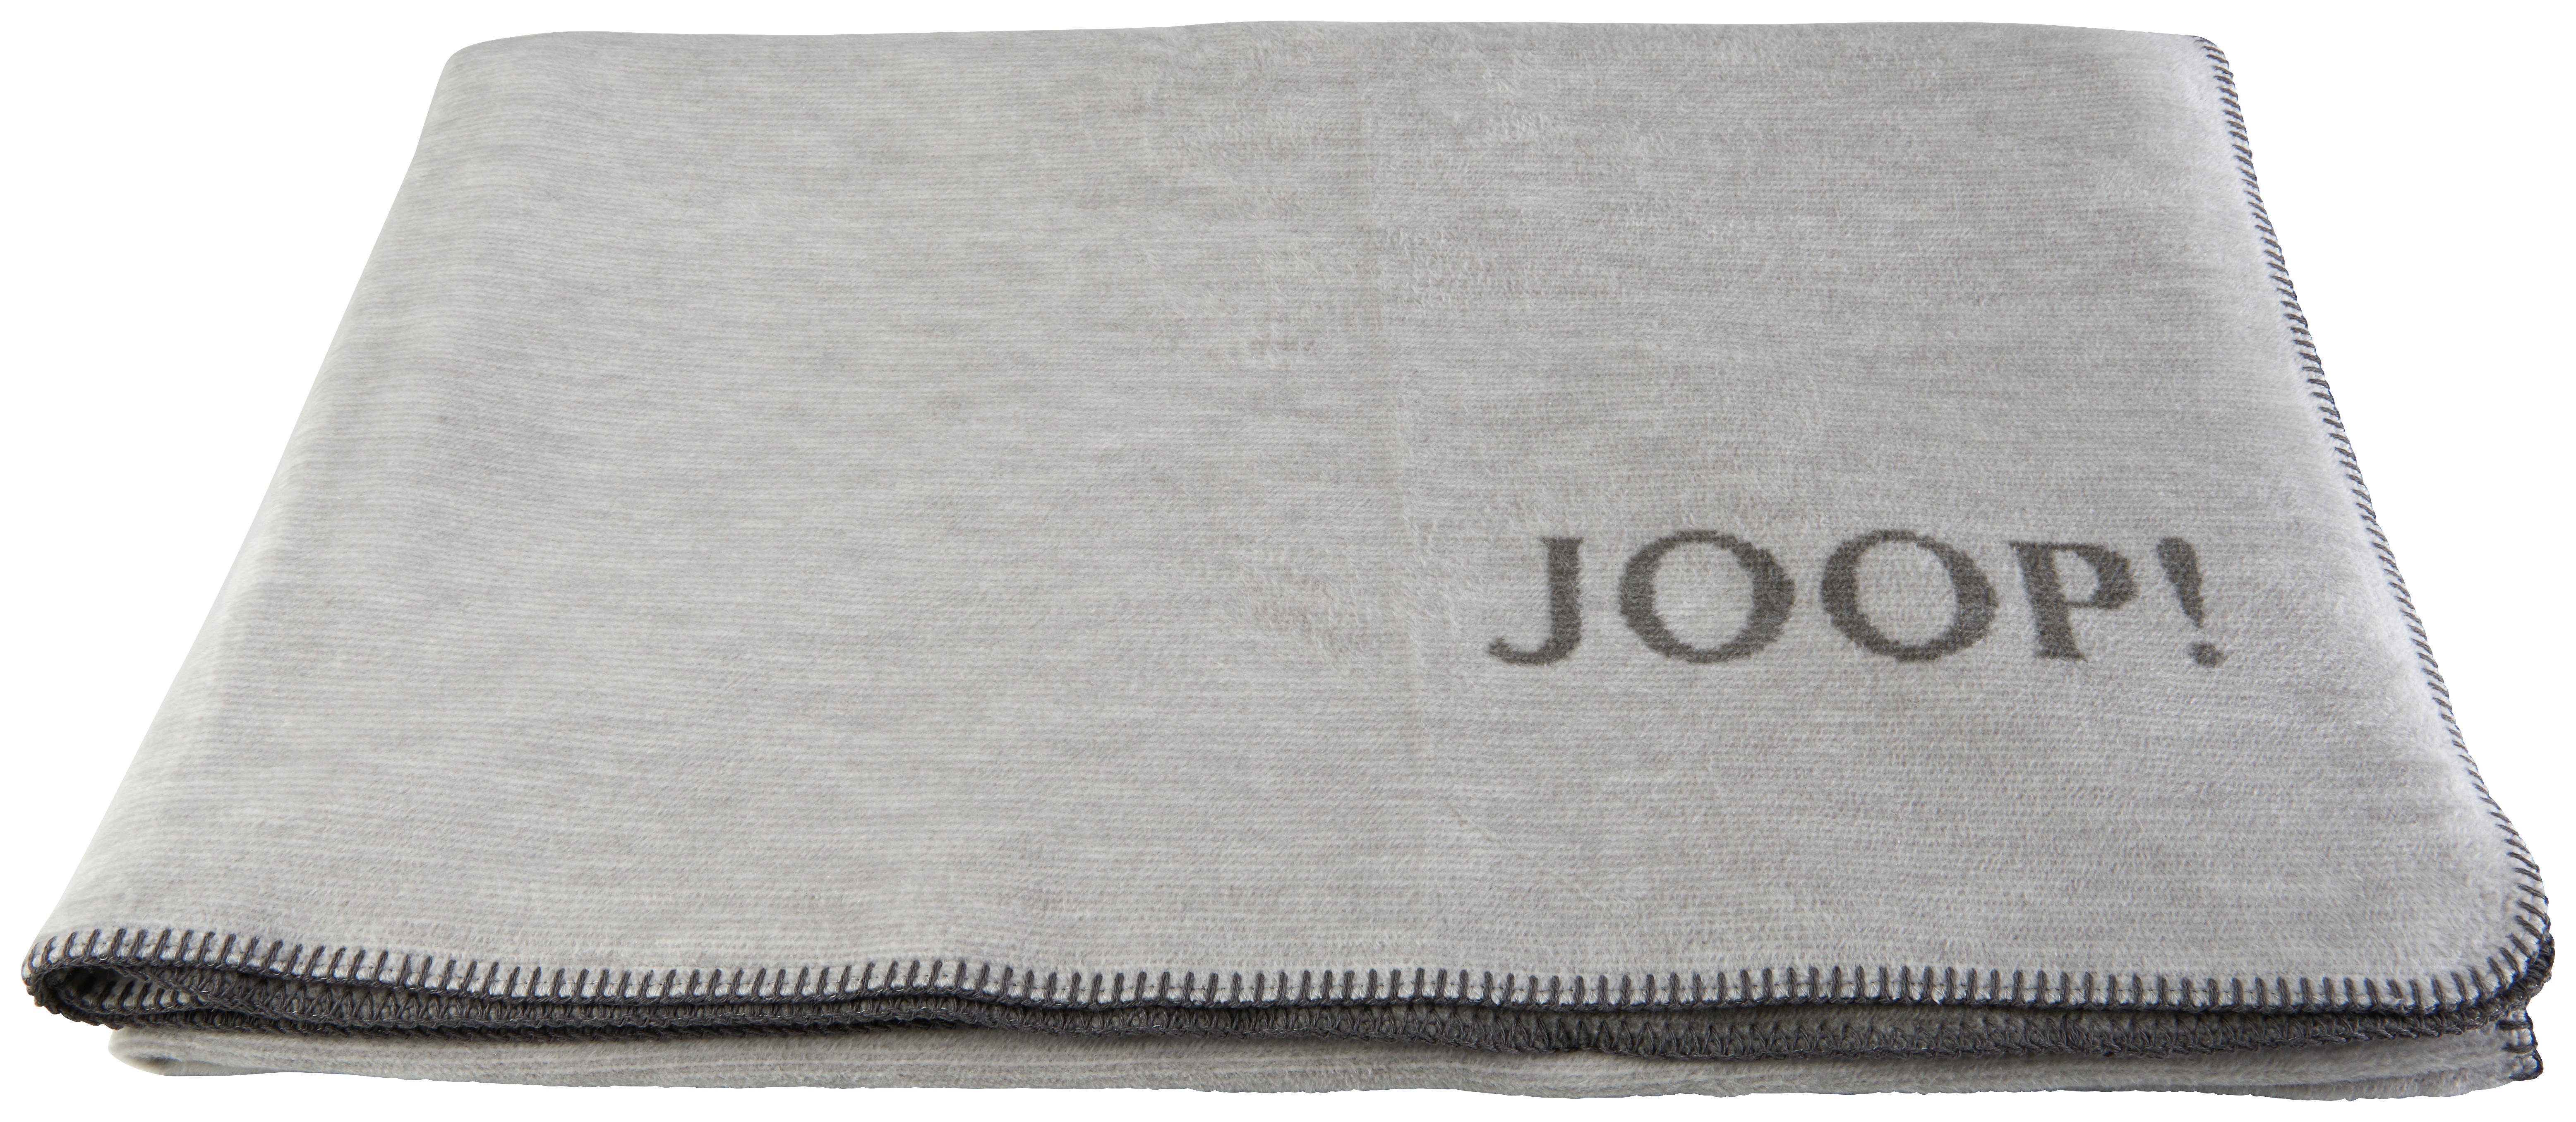 WOHNDECKE MELANGE DOUBLEFACE 150/200 cm  - Schieferfarben/Hellgrau, Design, Textil (150/200cm) - Joop!